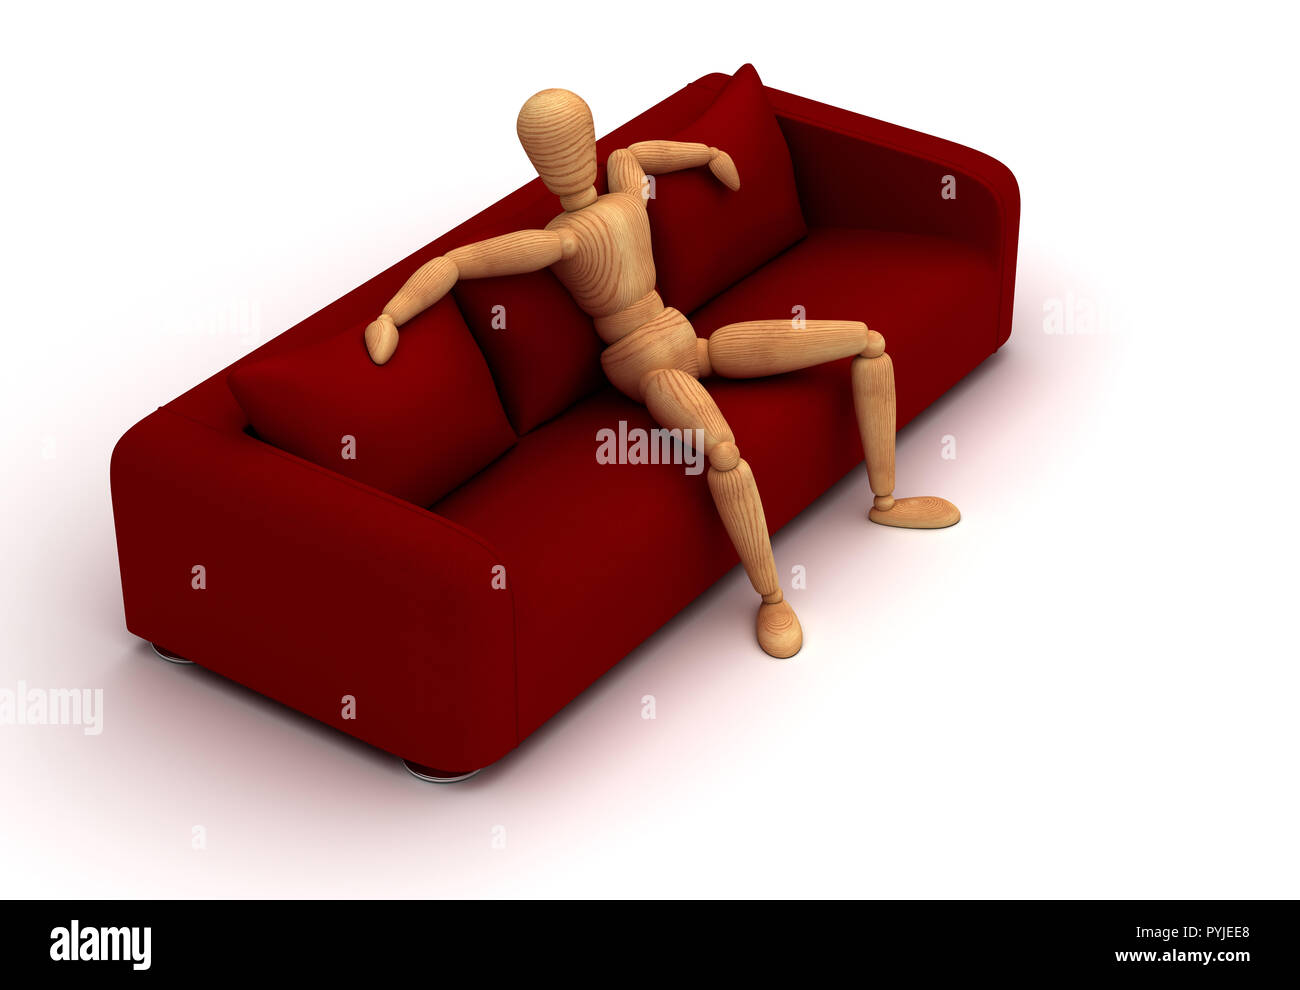 Manichino seduto sul divano rosso (isolato su sfondo bianco) Foto Stock